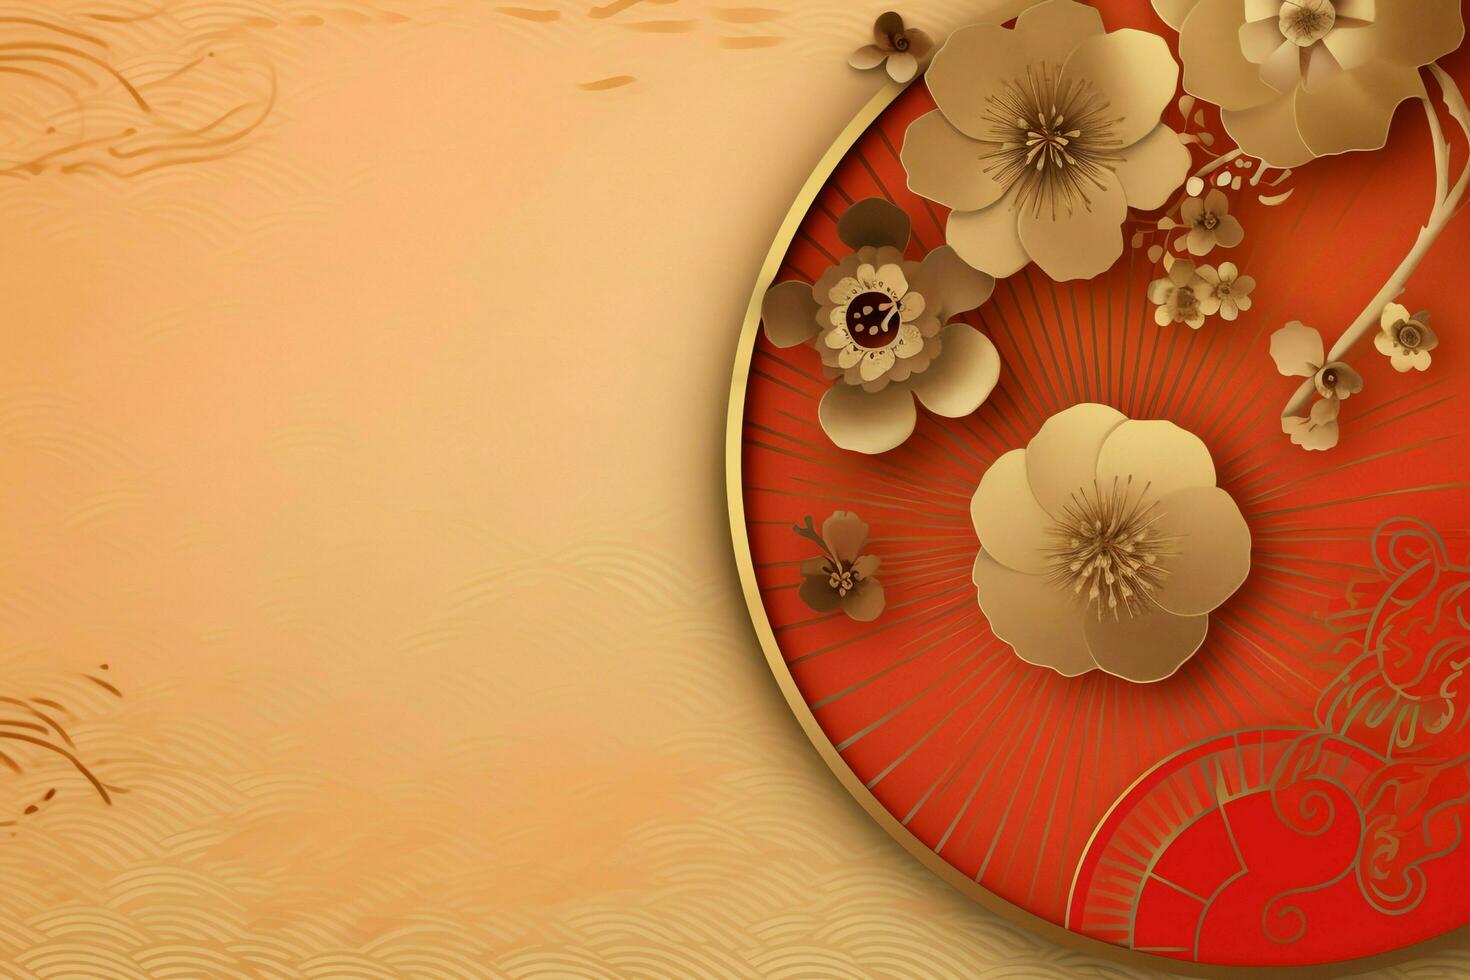 Chinese nieuw jaar achtergrond met traditioneel lantaarns, sakura bloemen en kopiëren ruimte. maan- nieuw jaar concept door ai gegenereerd foto